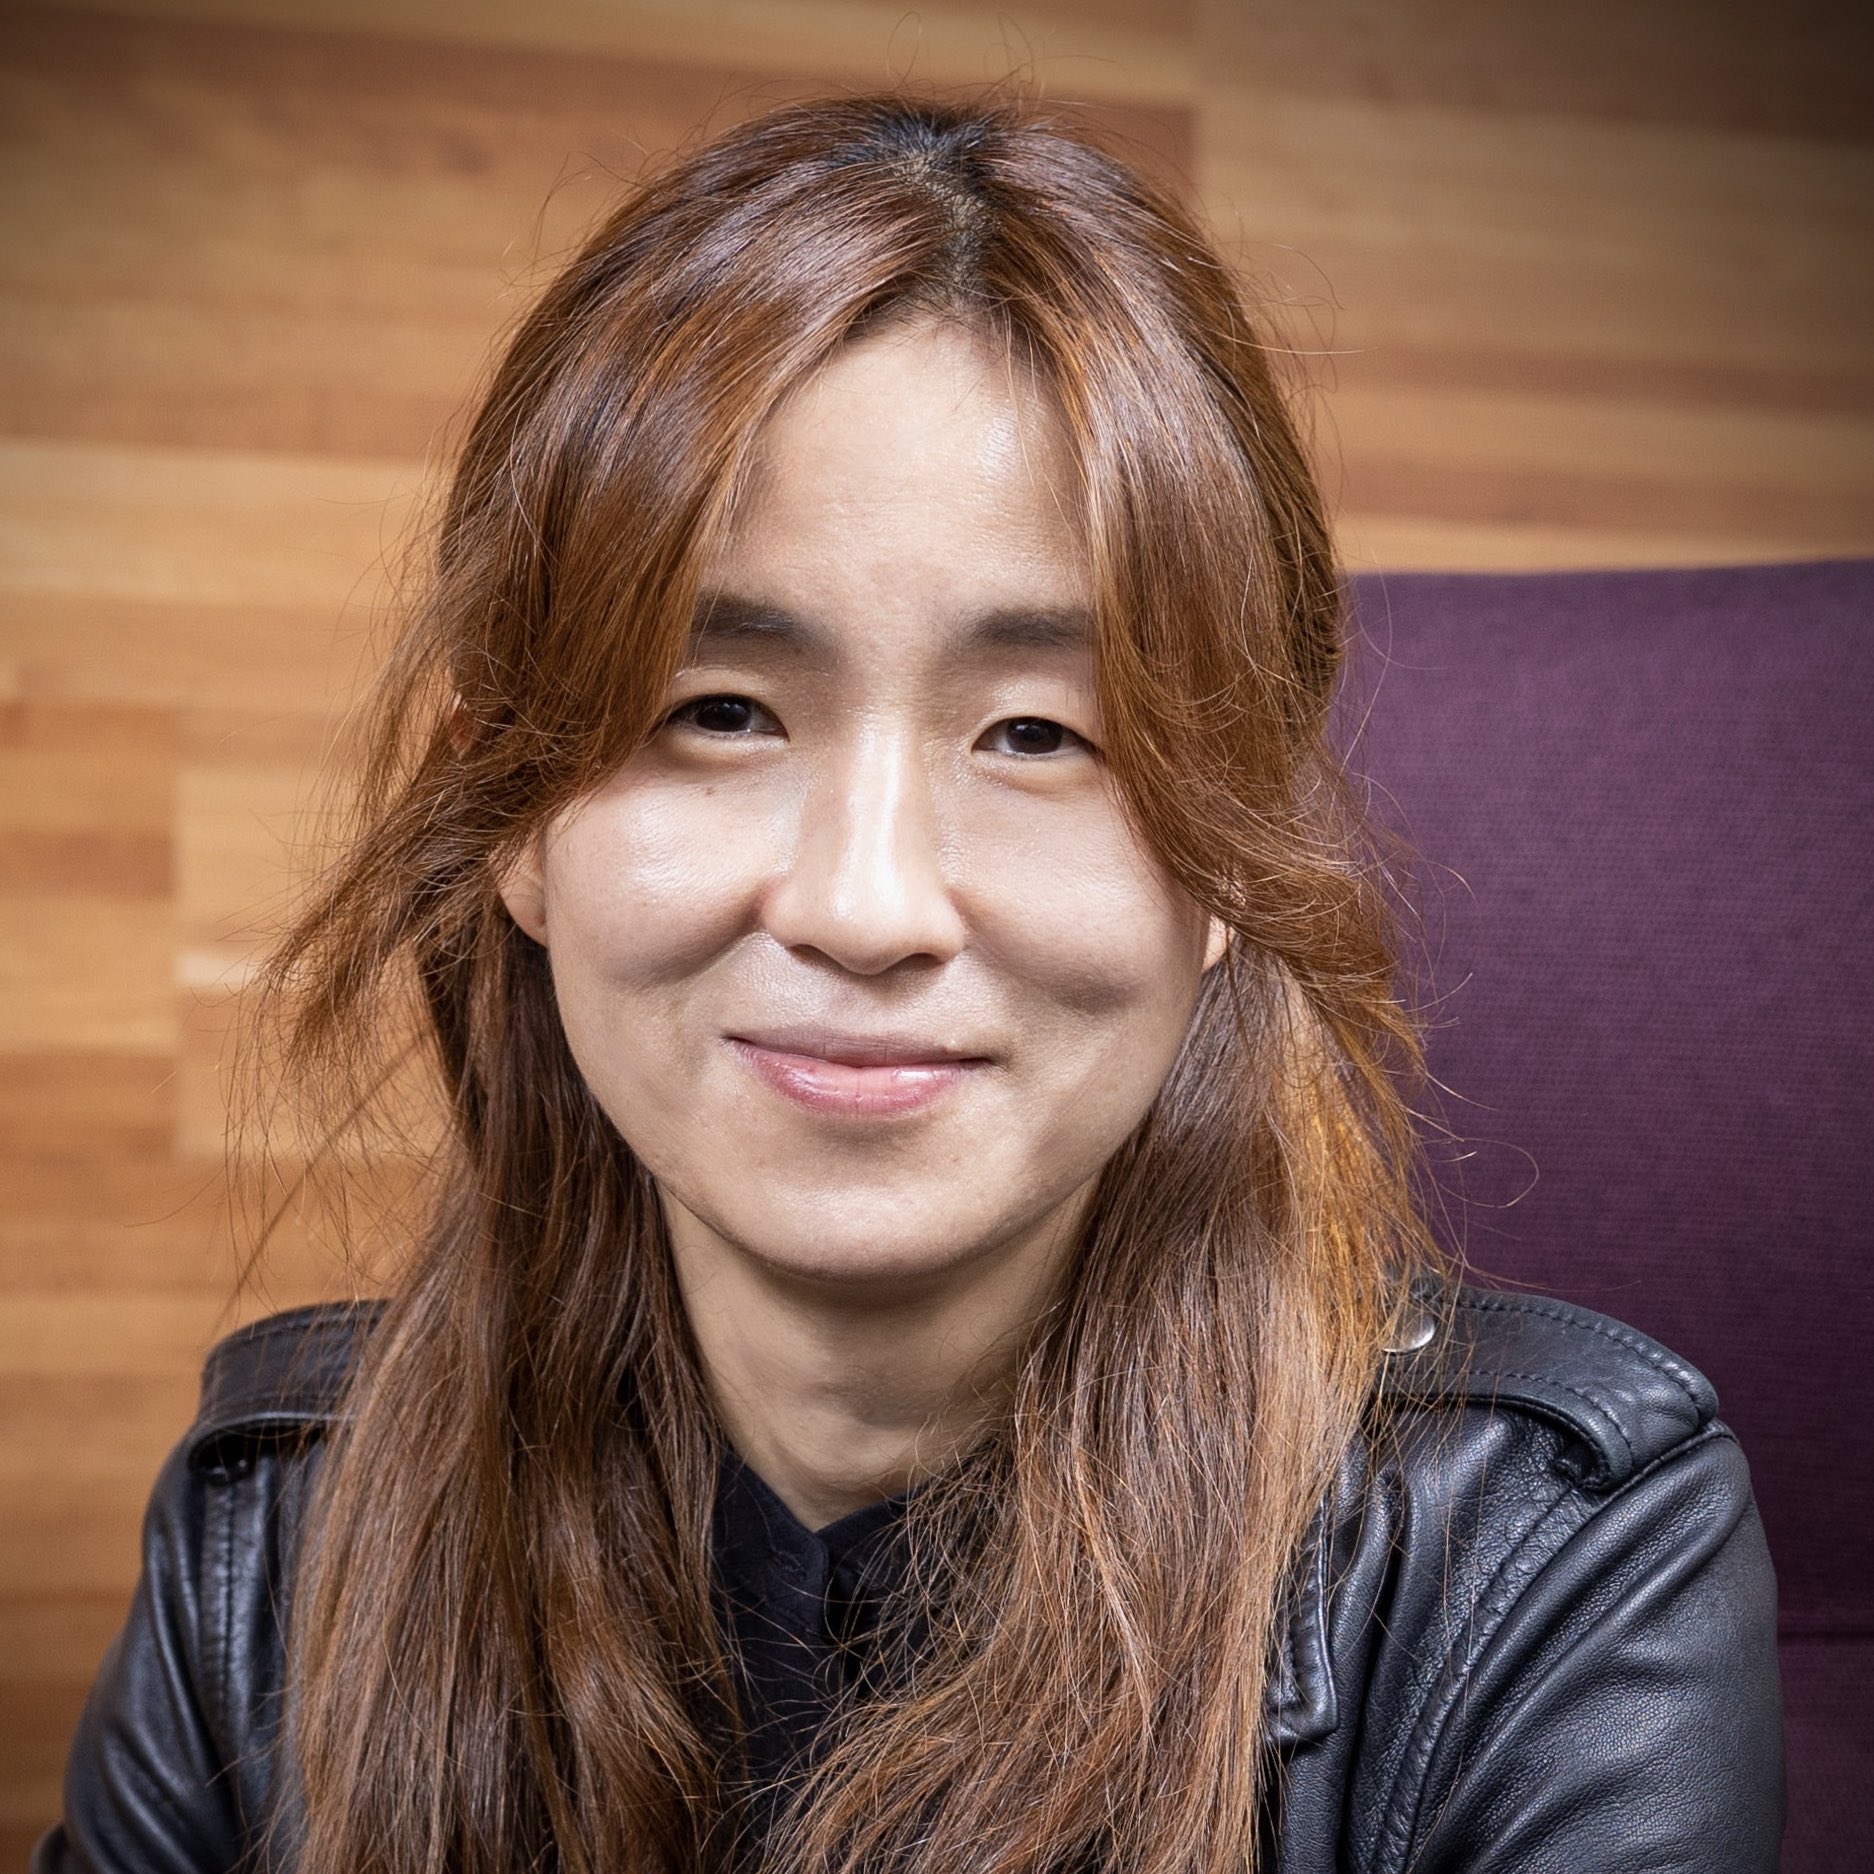 Yejin Choi